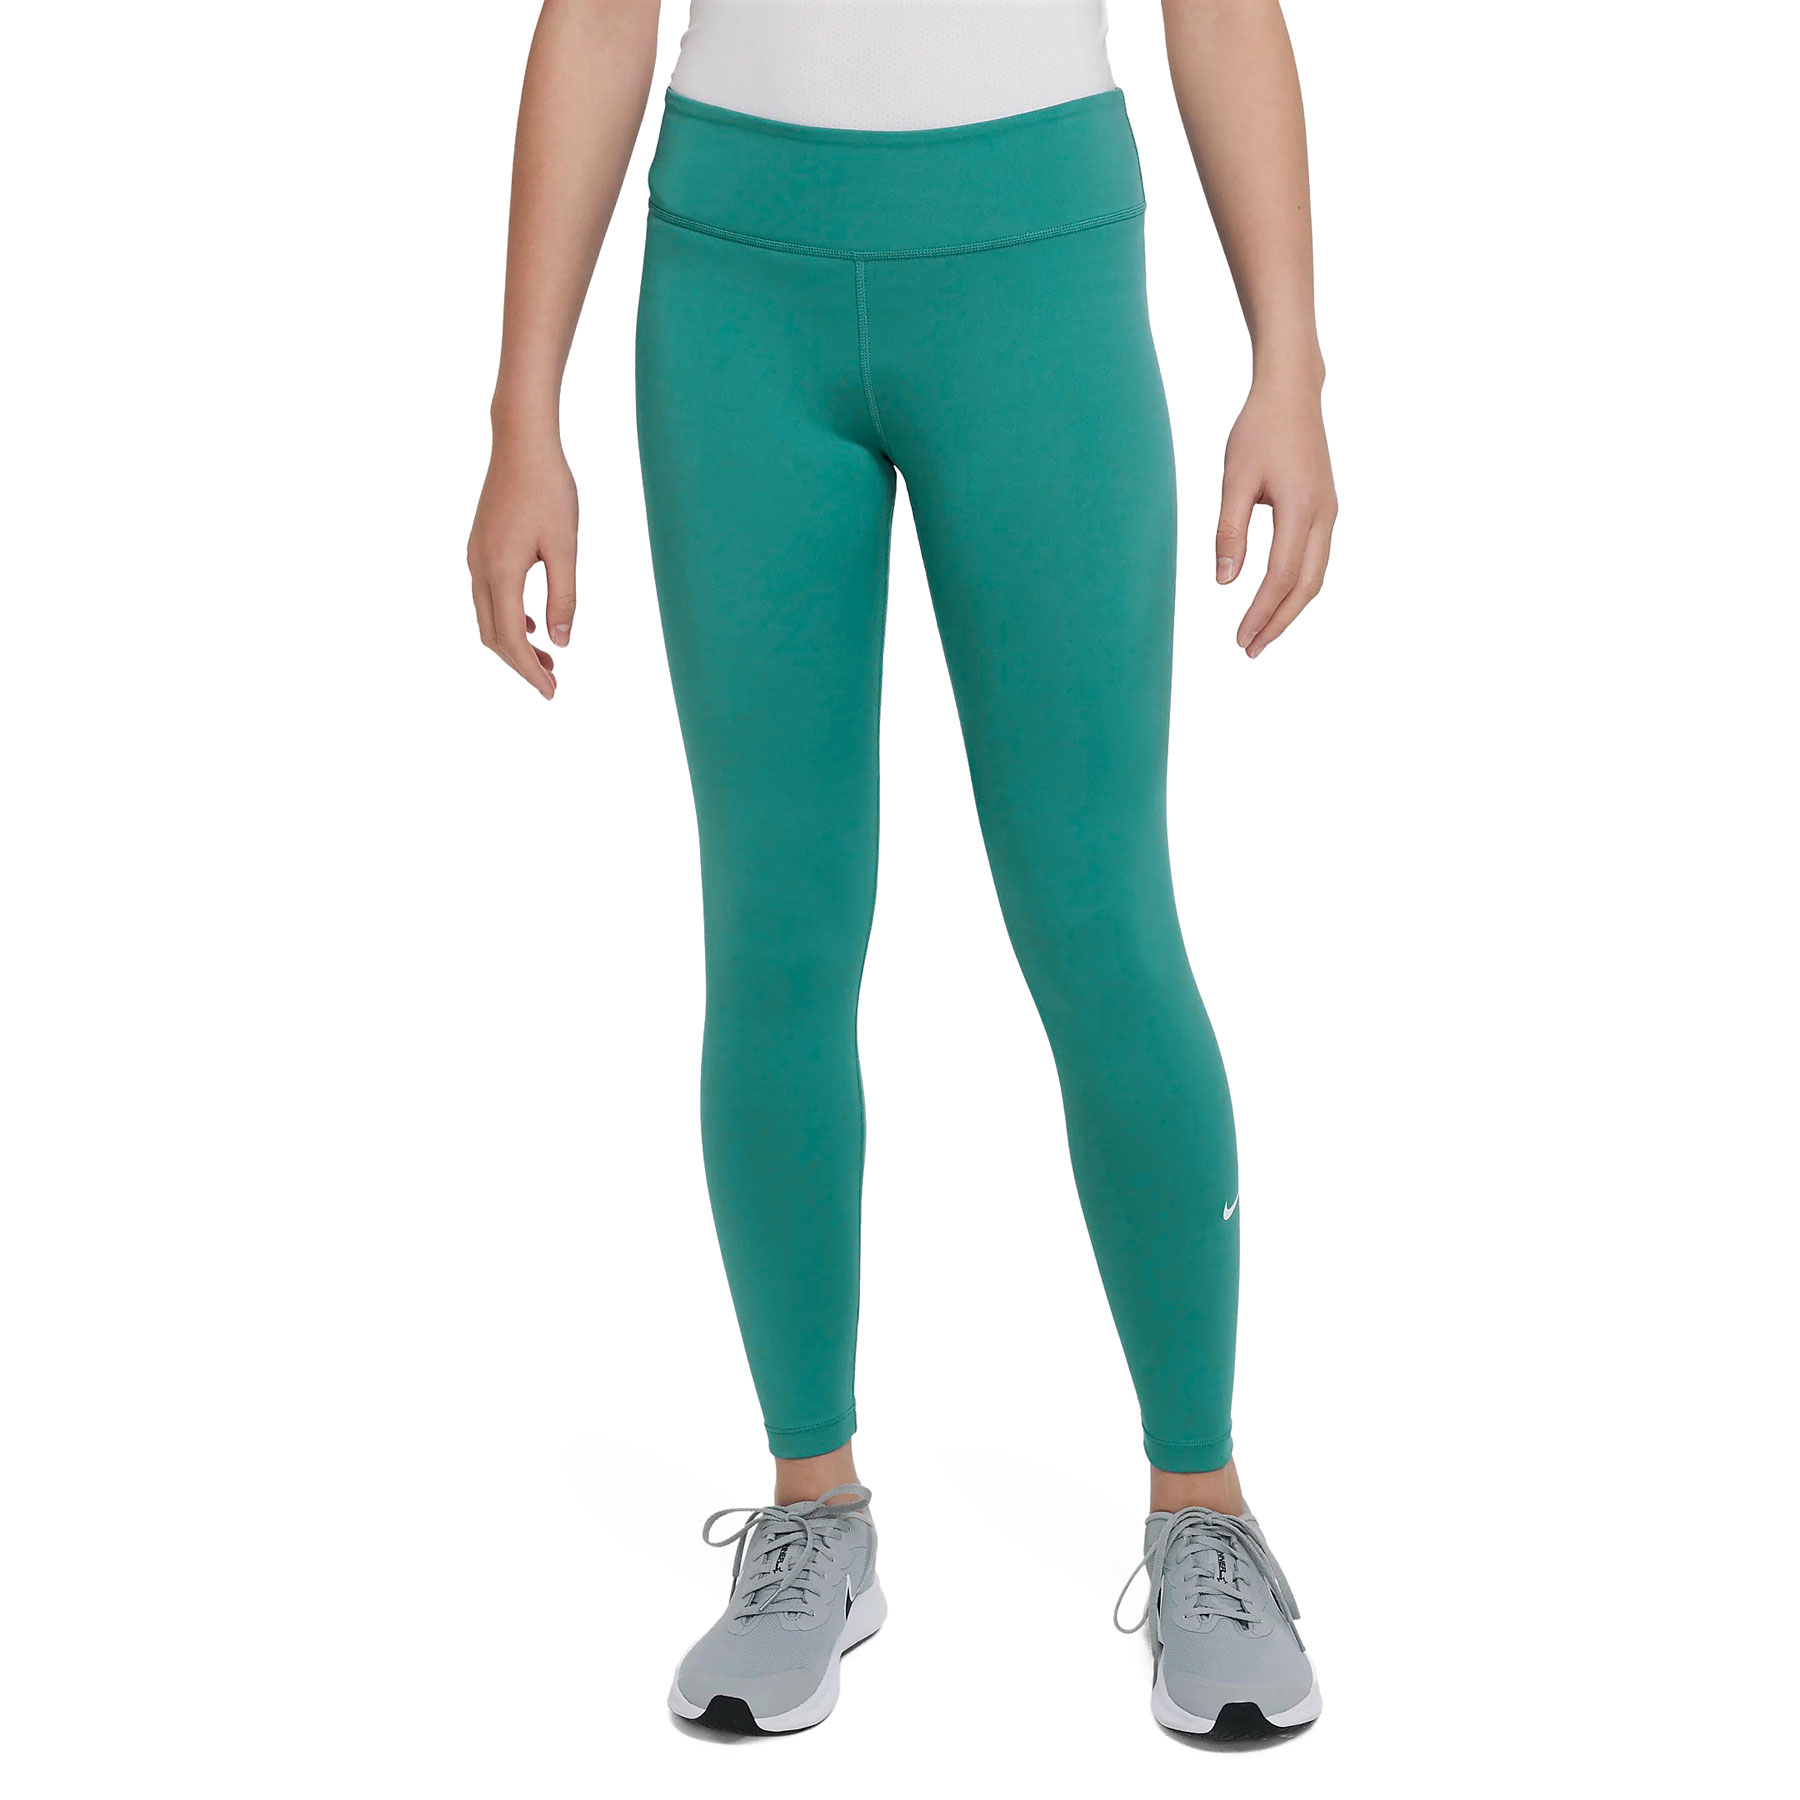 Produktbild von Nike Dri-FIT One Legging Kinder - clear jade/white DQ8836-317